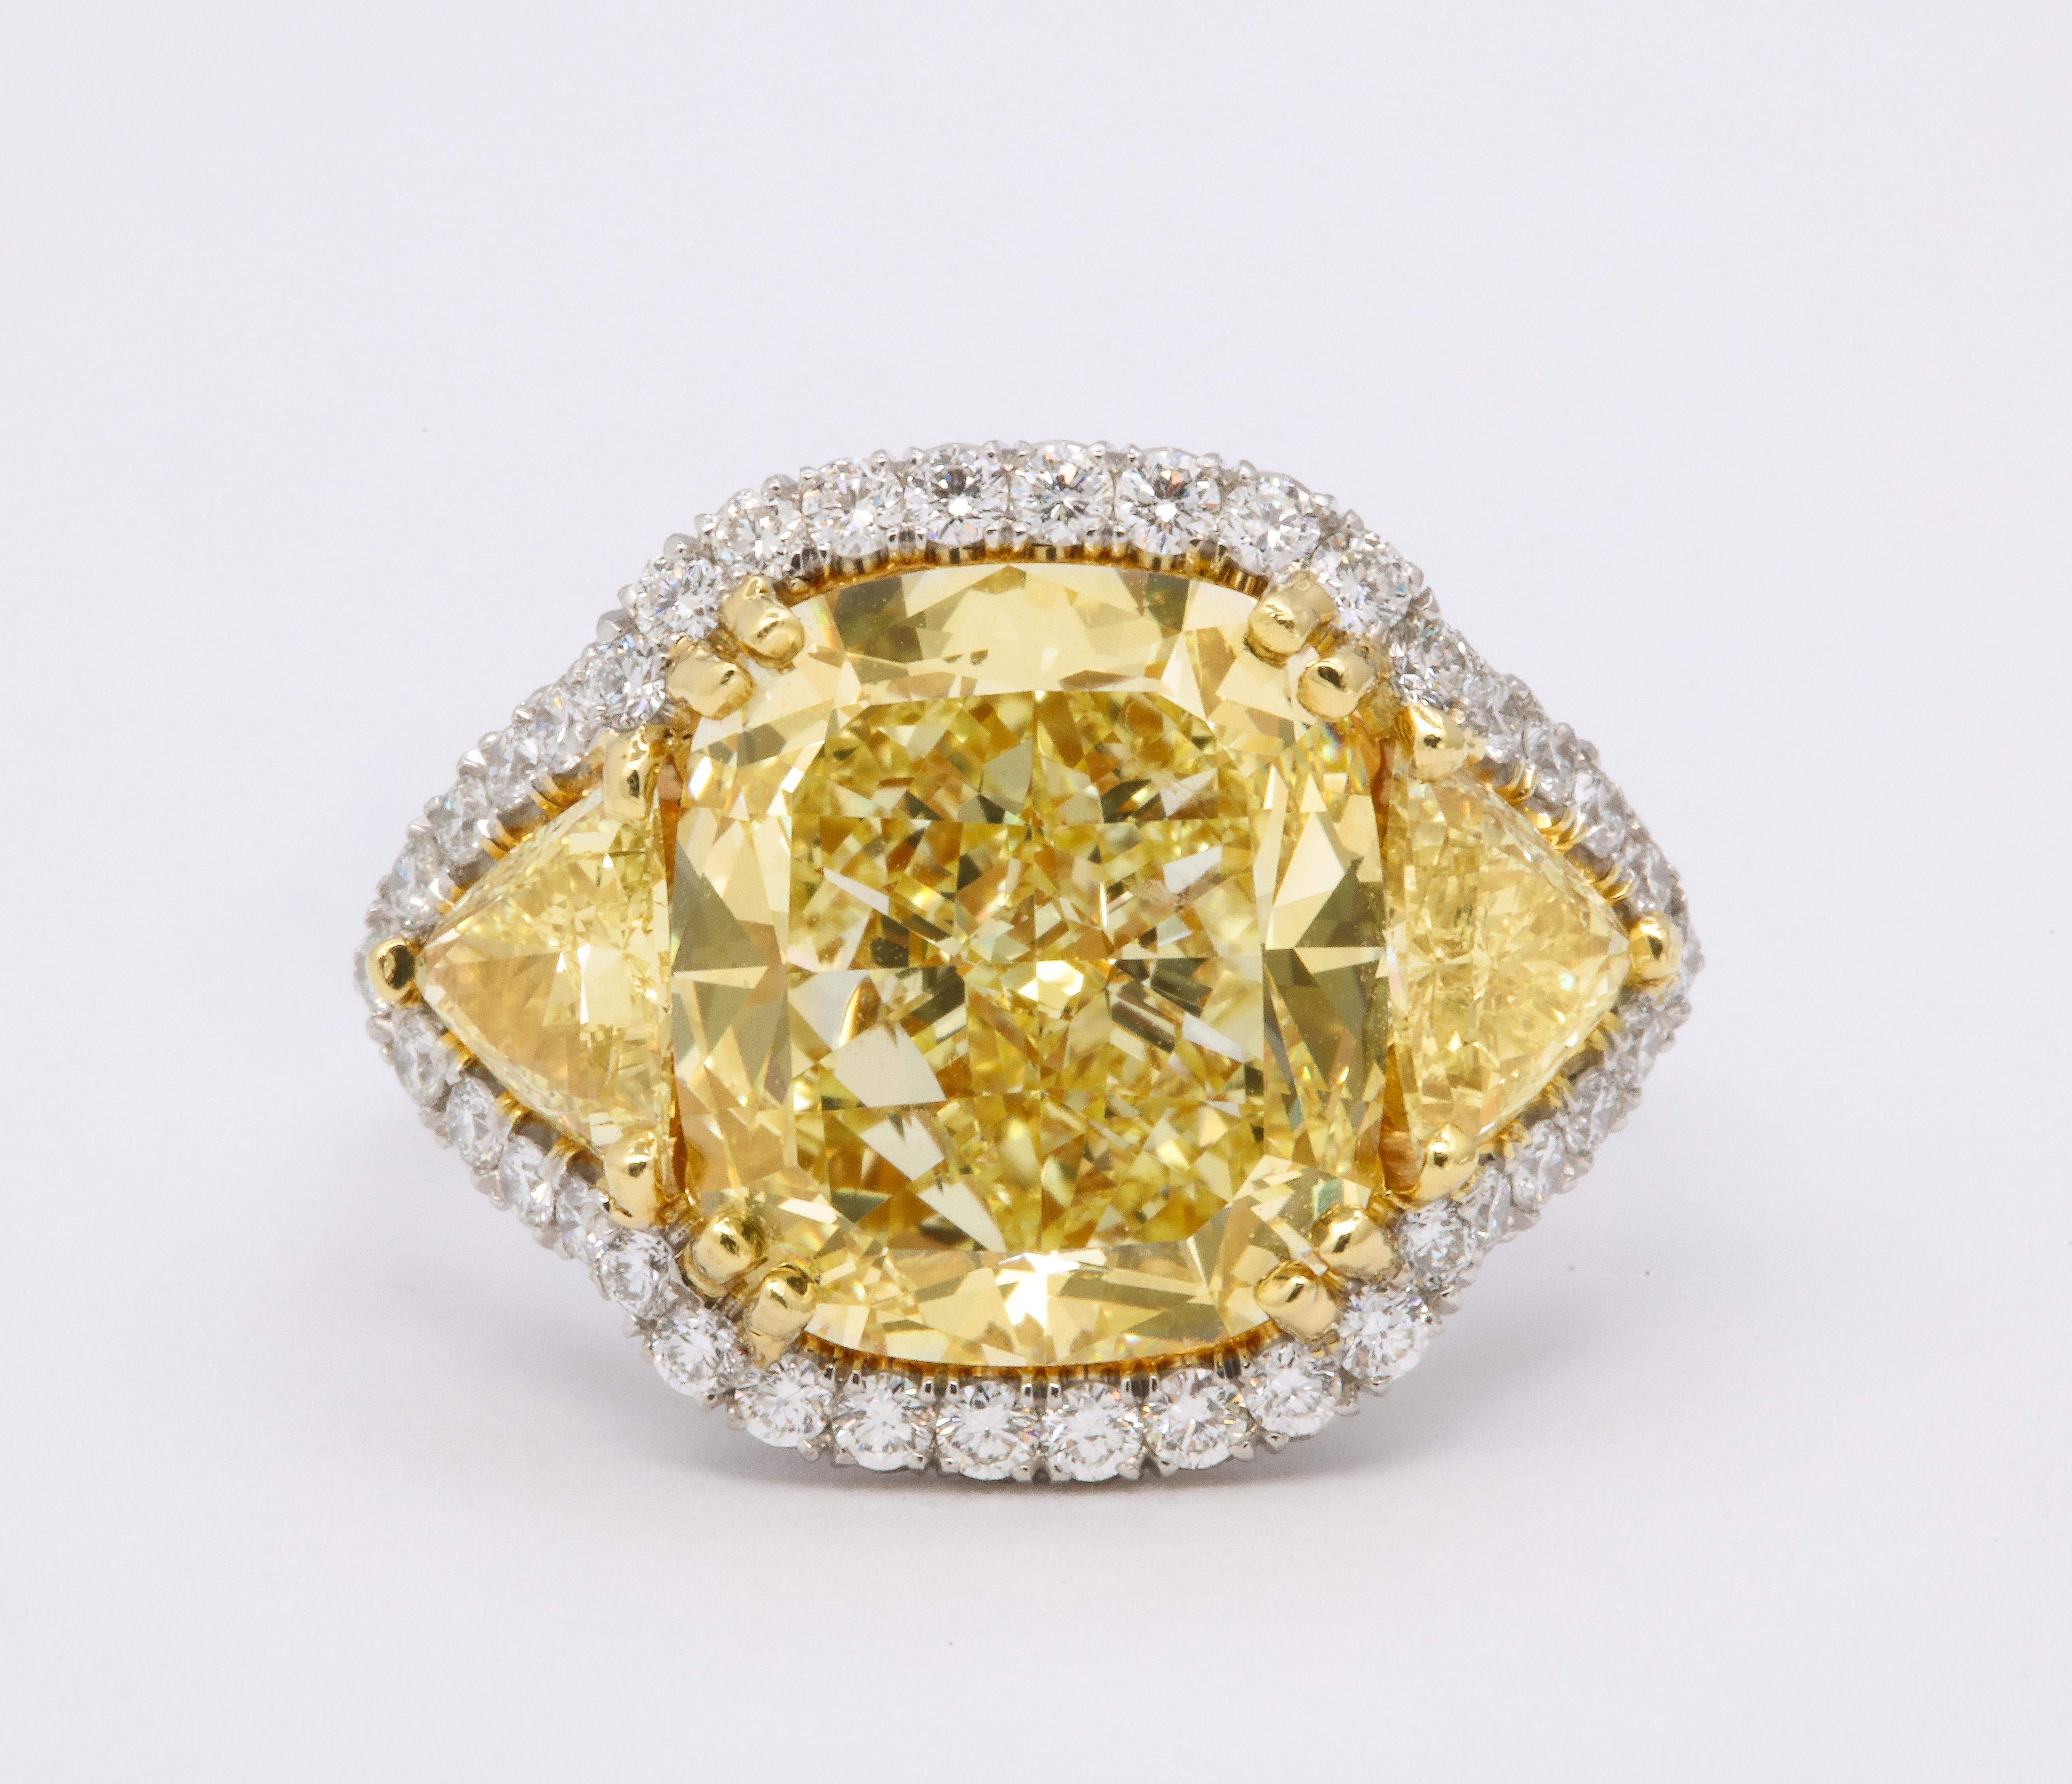 
Ein unglaublicher gelber Diamant, gefasst in einer einzigartigen, maßgeschneiderten Fassung. 

Dieser Diamant hat eine satte gelbe Farbe und ist voller Leben.

GIA-zertifizierter 8,33 Karat Fancy Yellow VS1 Diamant im Kissenschliff. 

Ungefähr 1,50